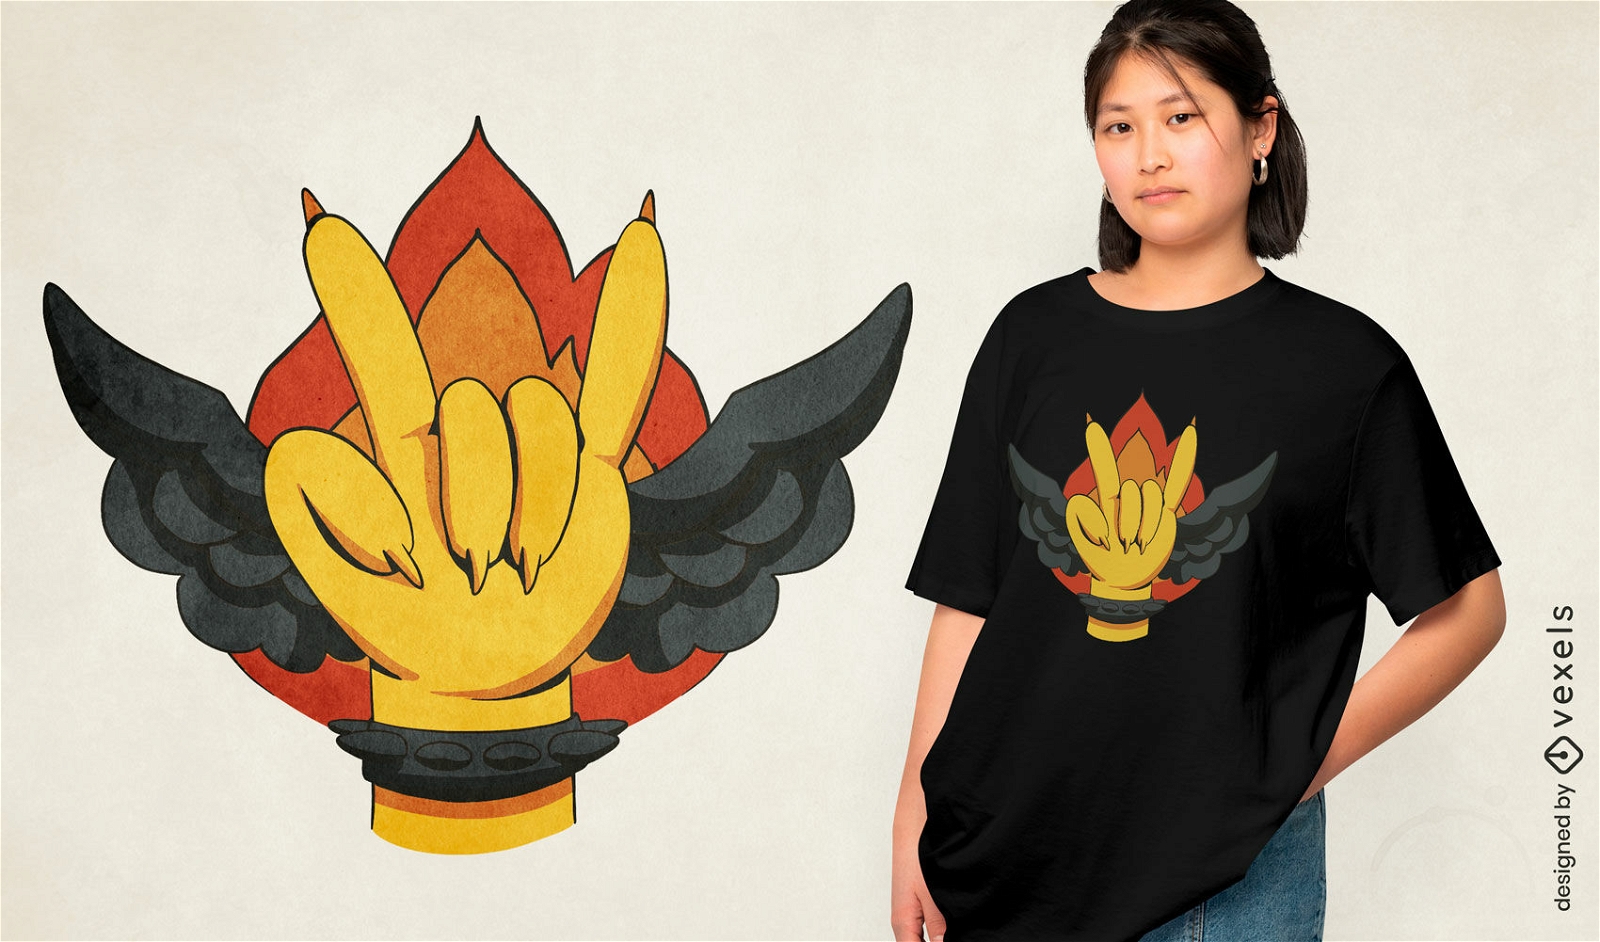 Diseño de camiseta con símbolo de mano ardiente alada.